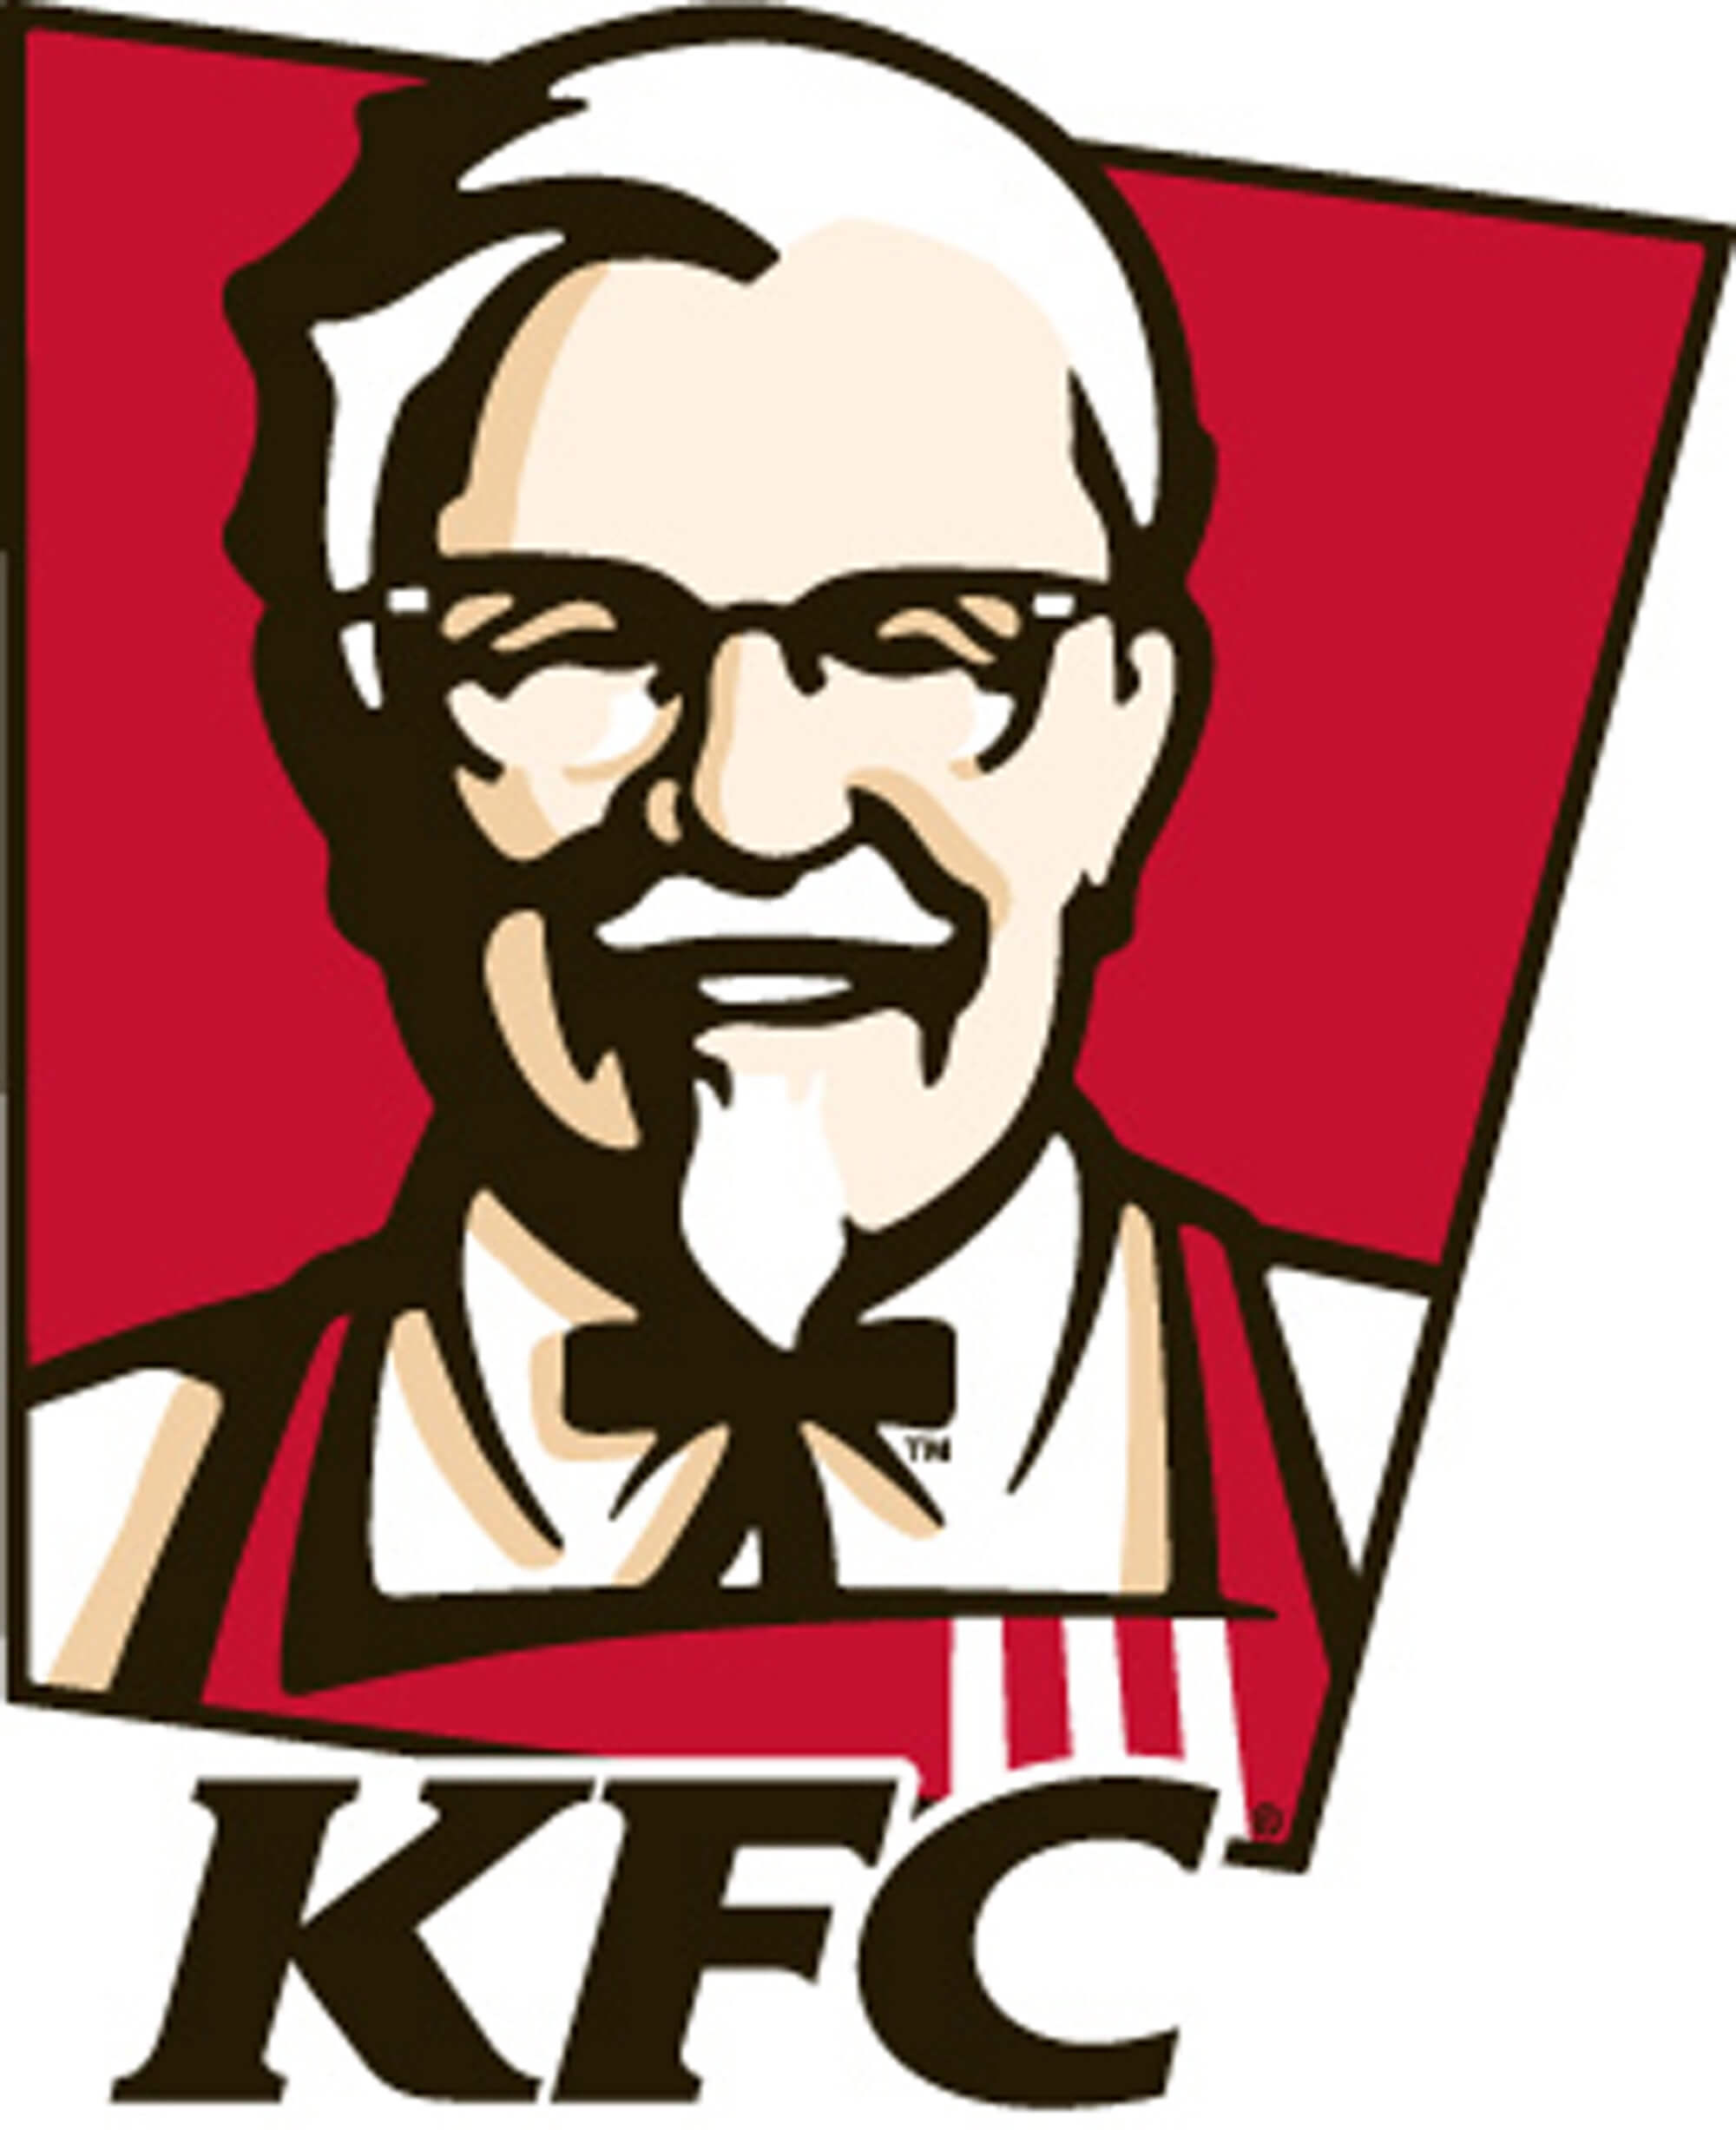 KFC+LOGO